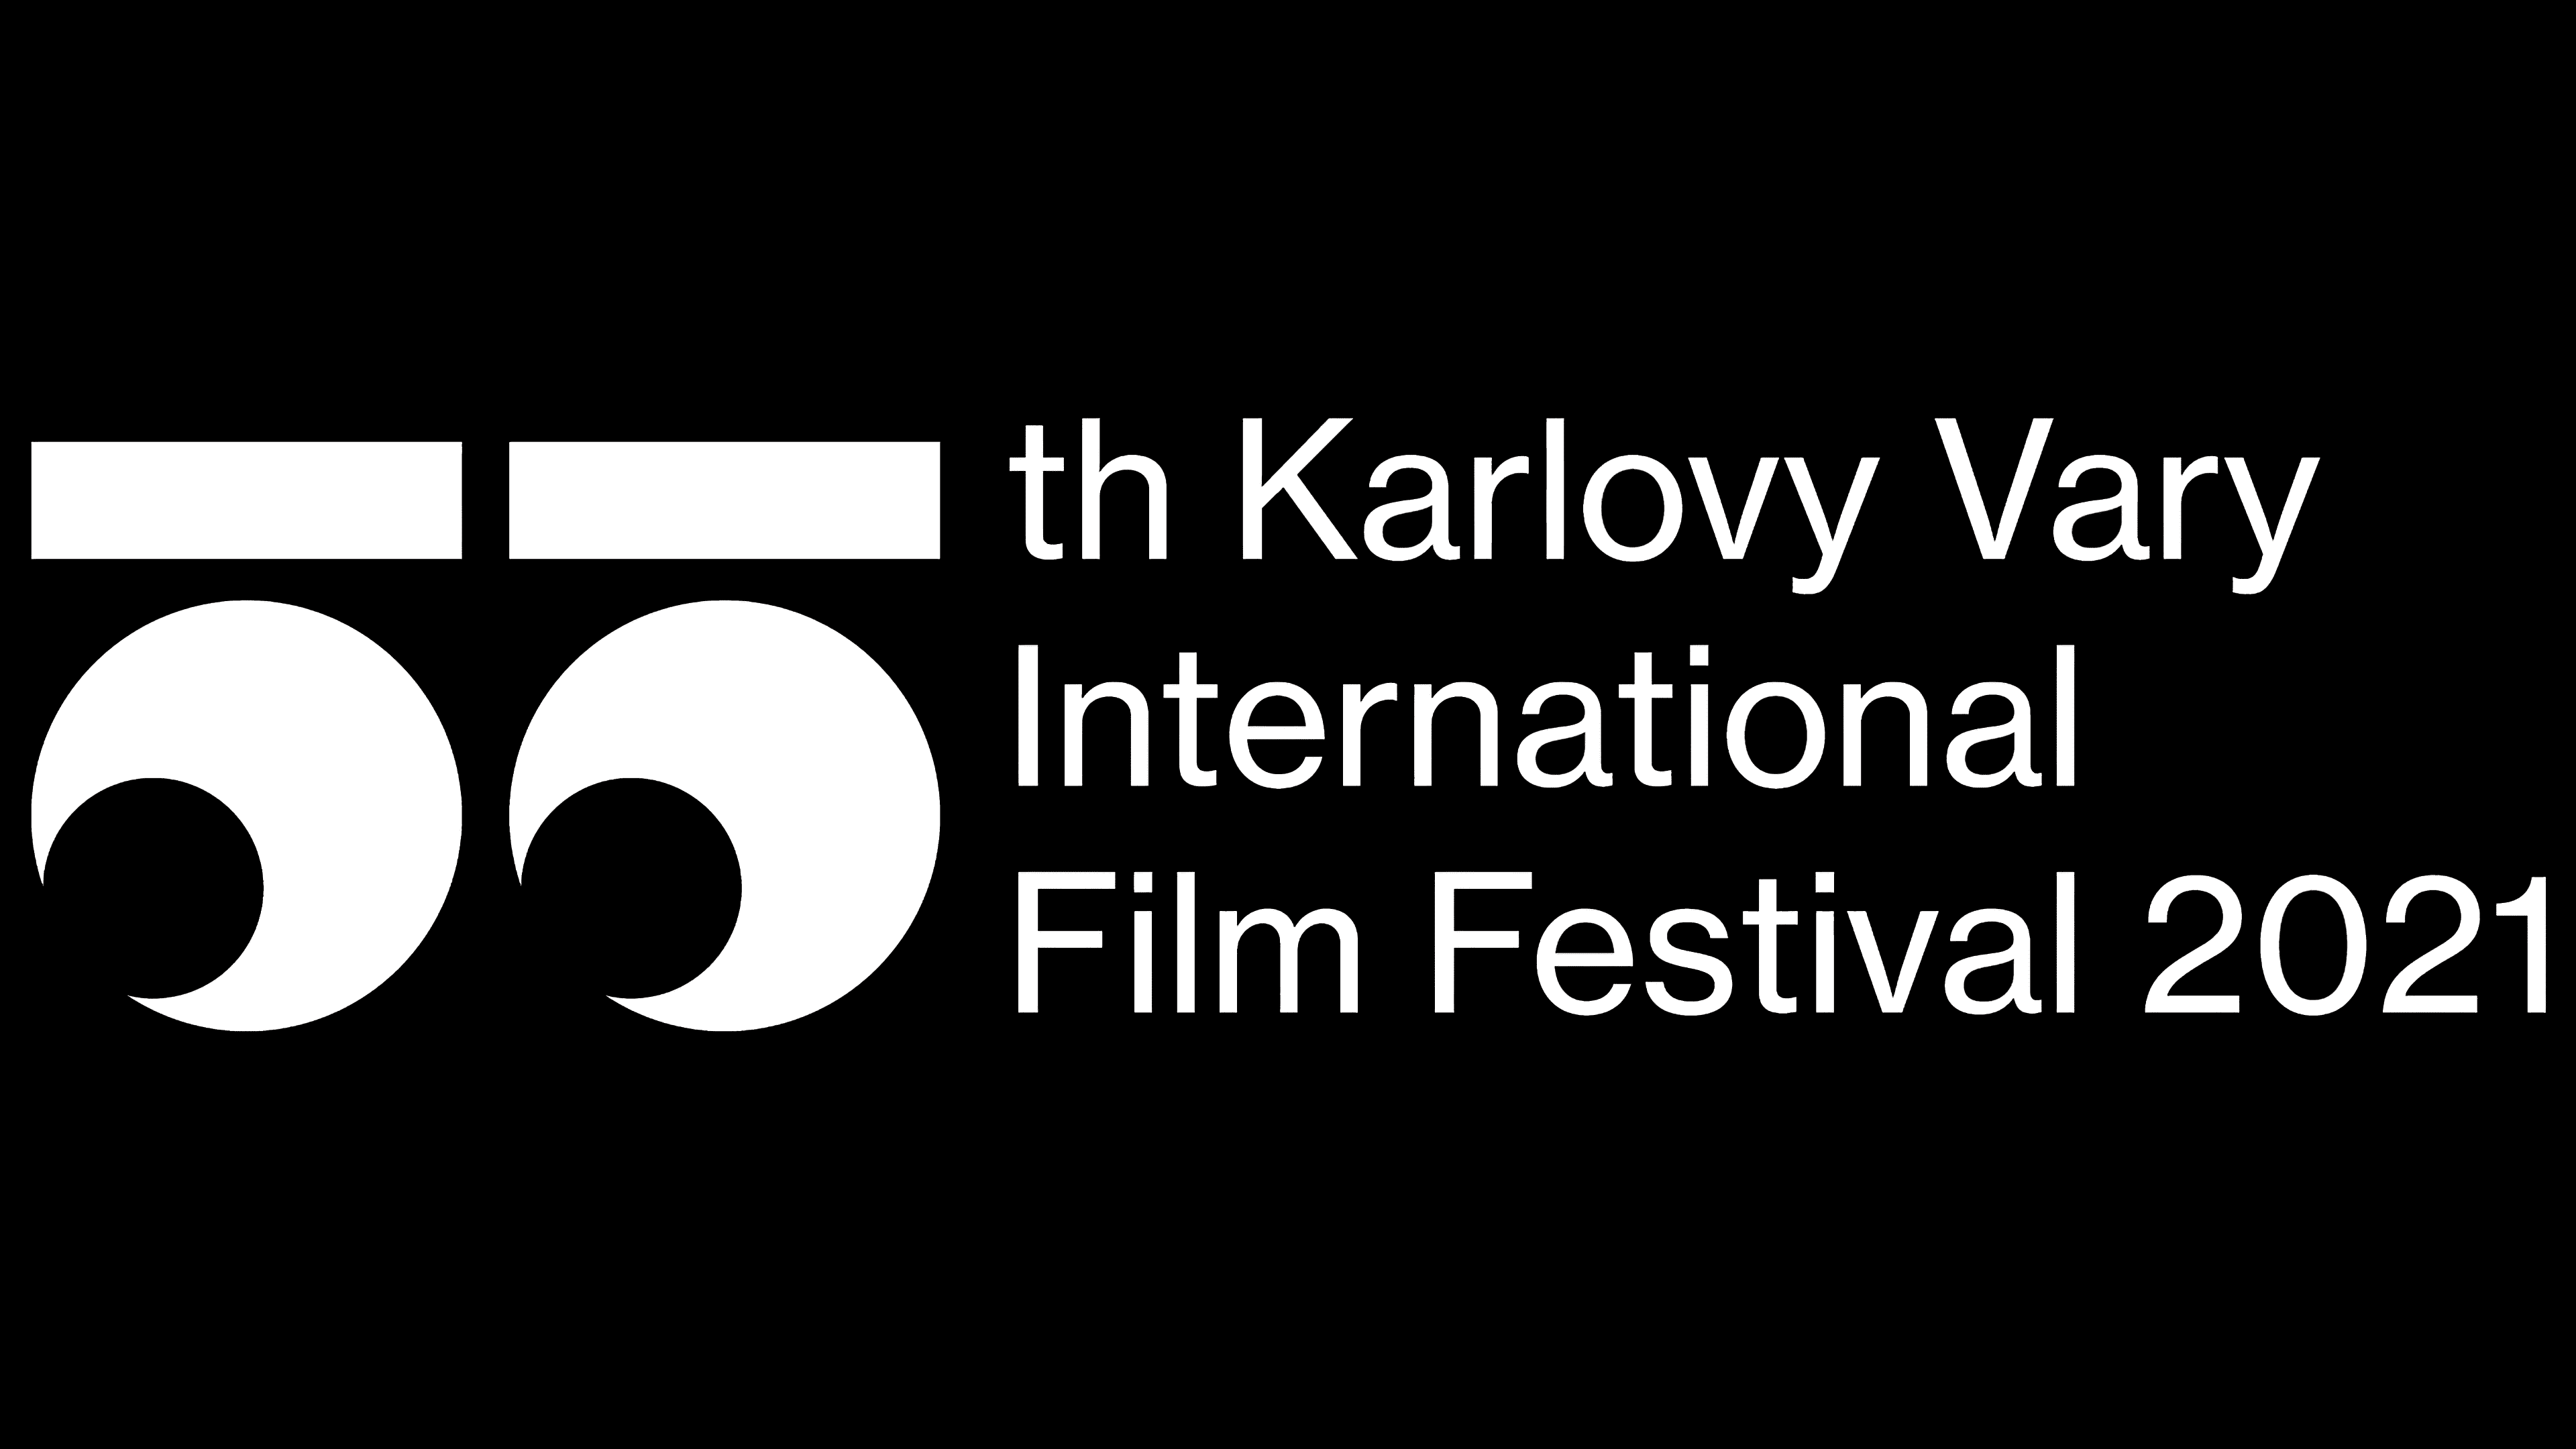 55th Karlovy Vary International Film Festival (KVIFF) presented its new logo